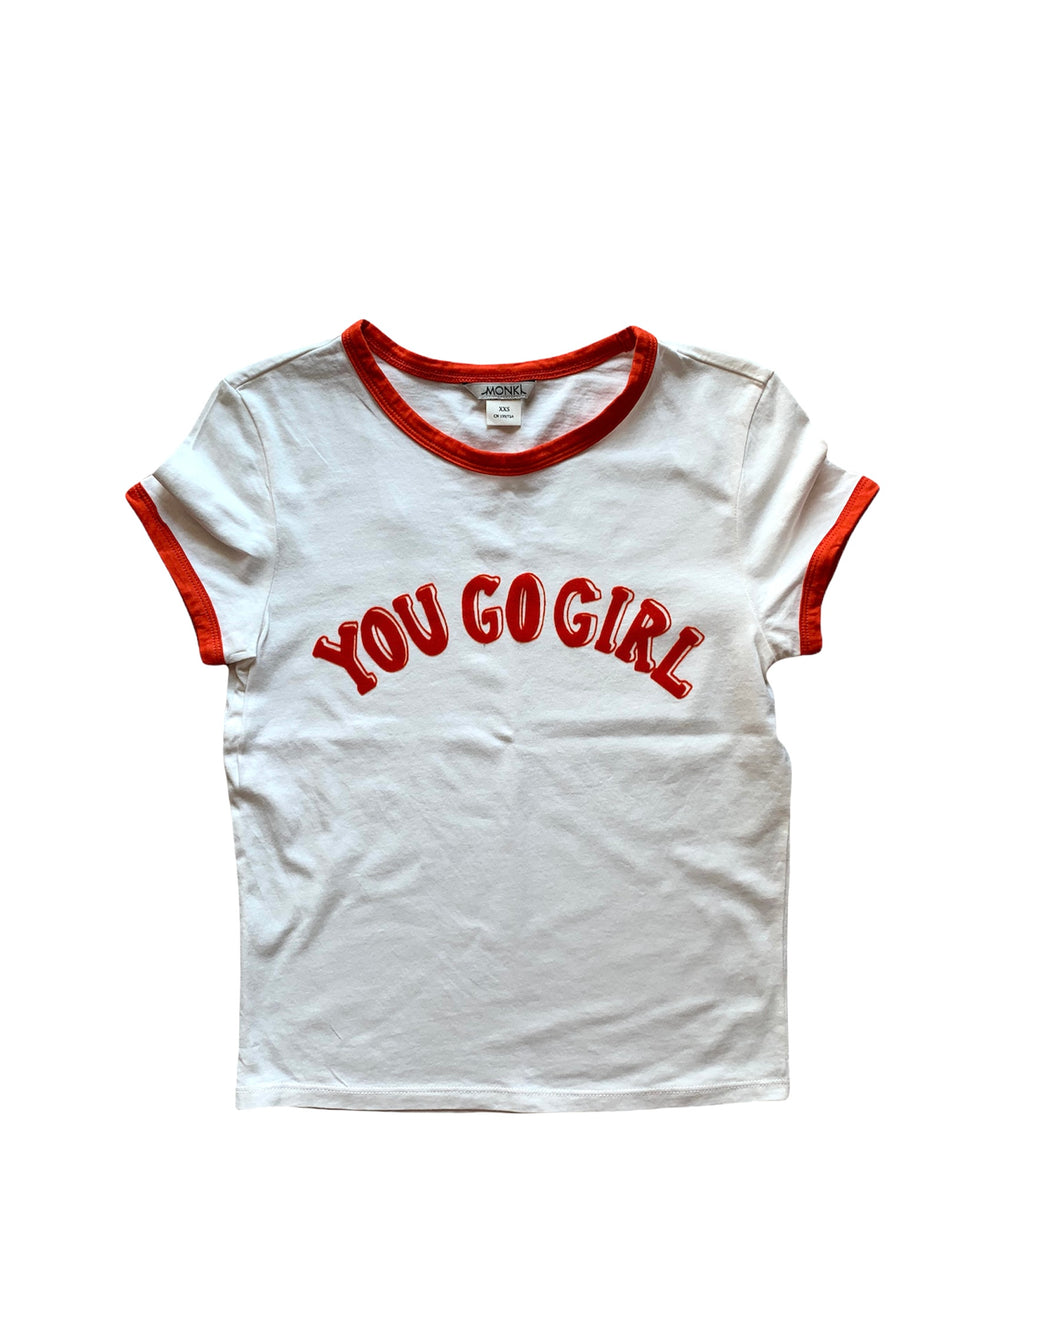 “You go girl” 00s baby tee